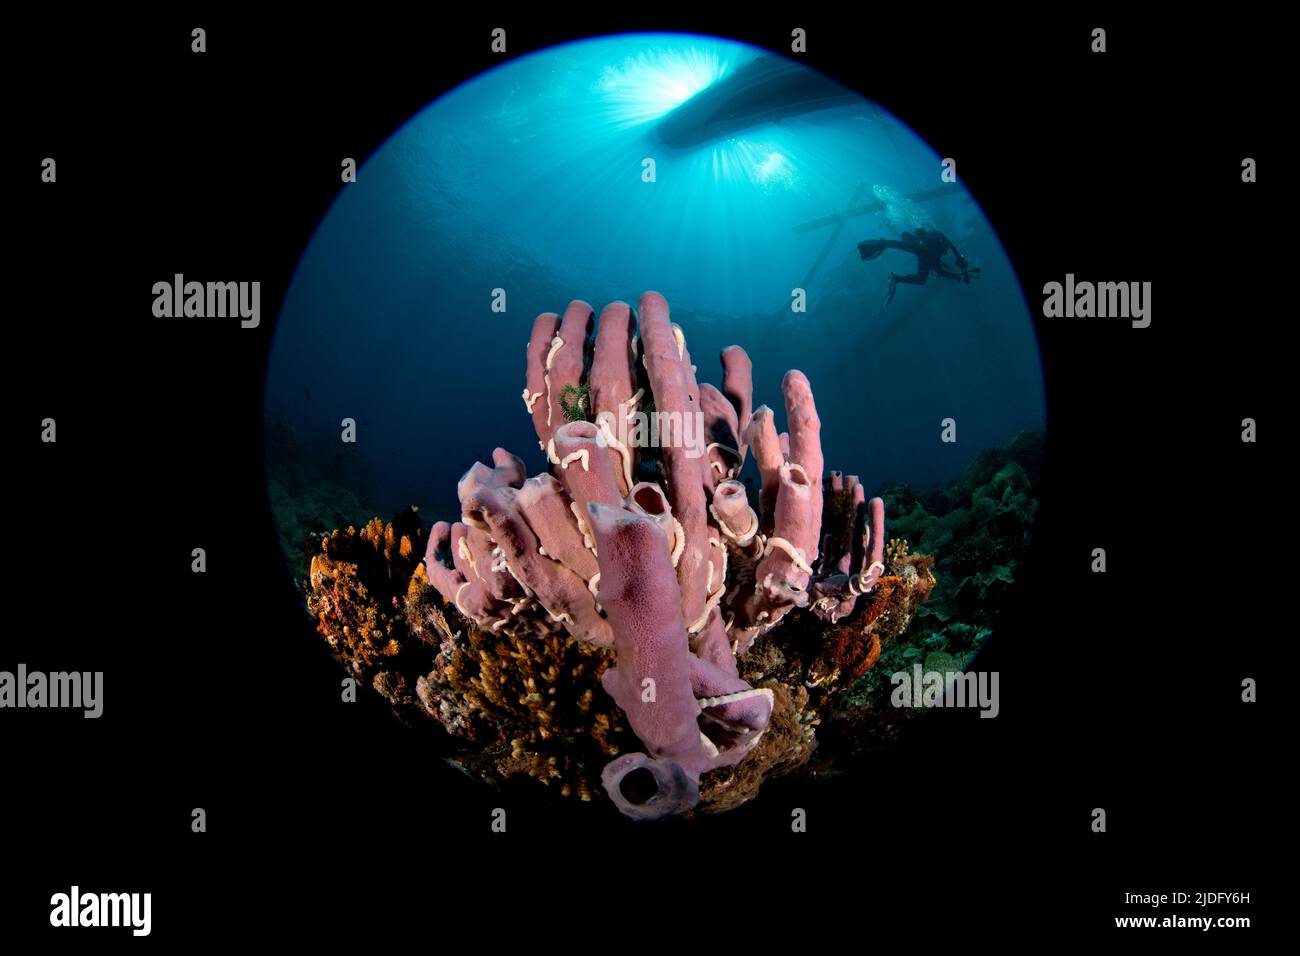 Sponge on Philippines reef Stock Photo